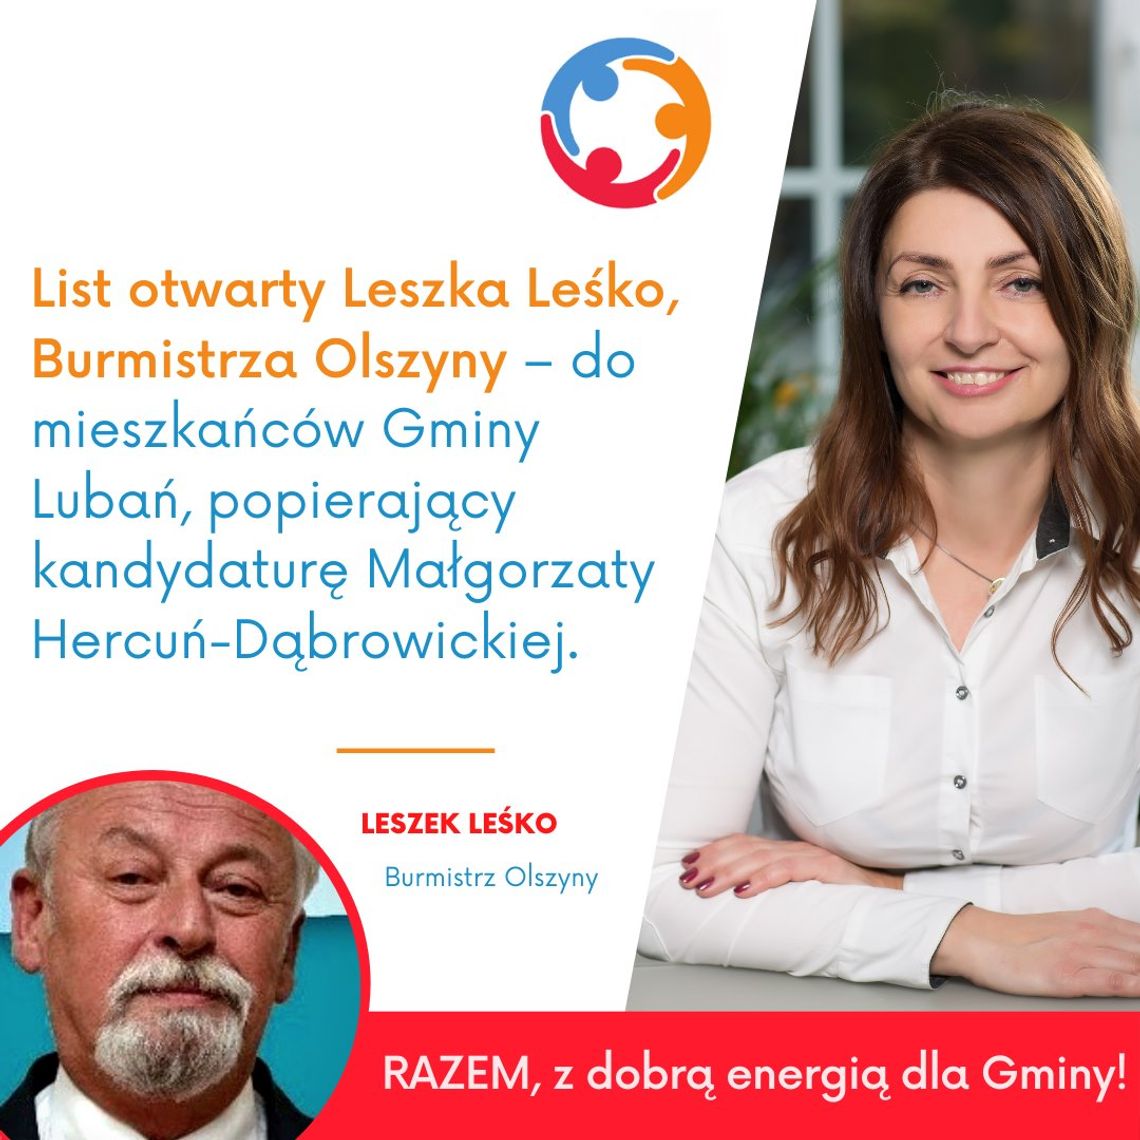 Leszek Leśko poparł kandydaturę Małgorzaty Hercuń-Dąbrowickiej